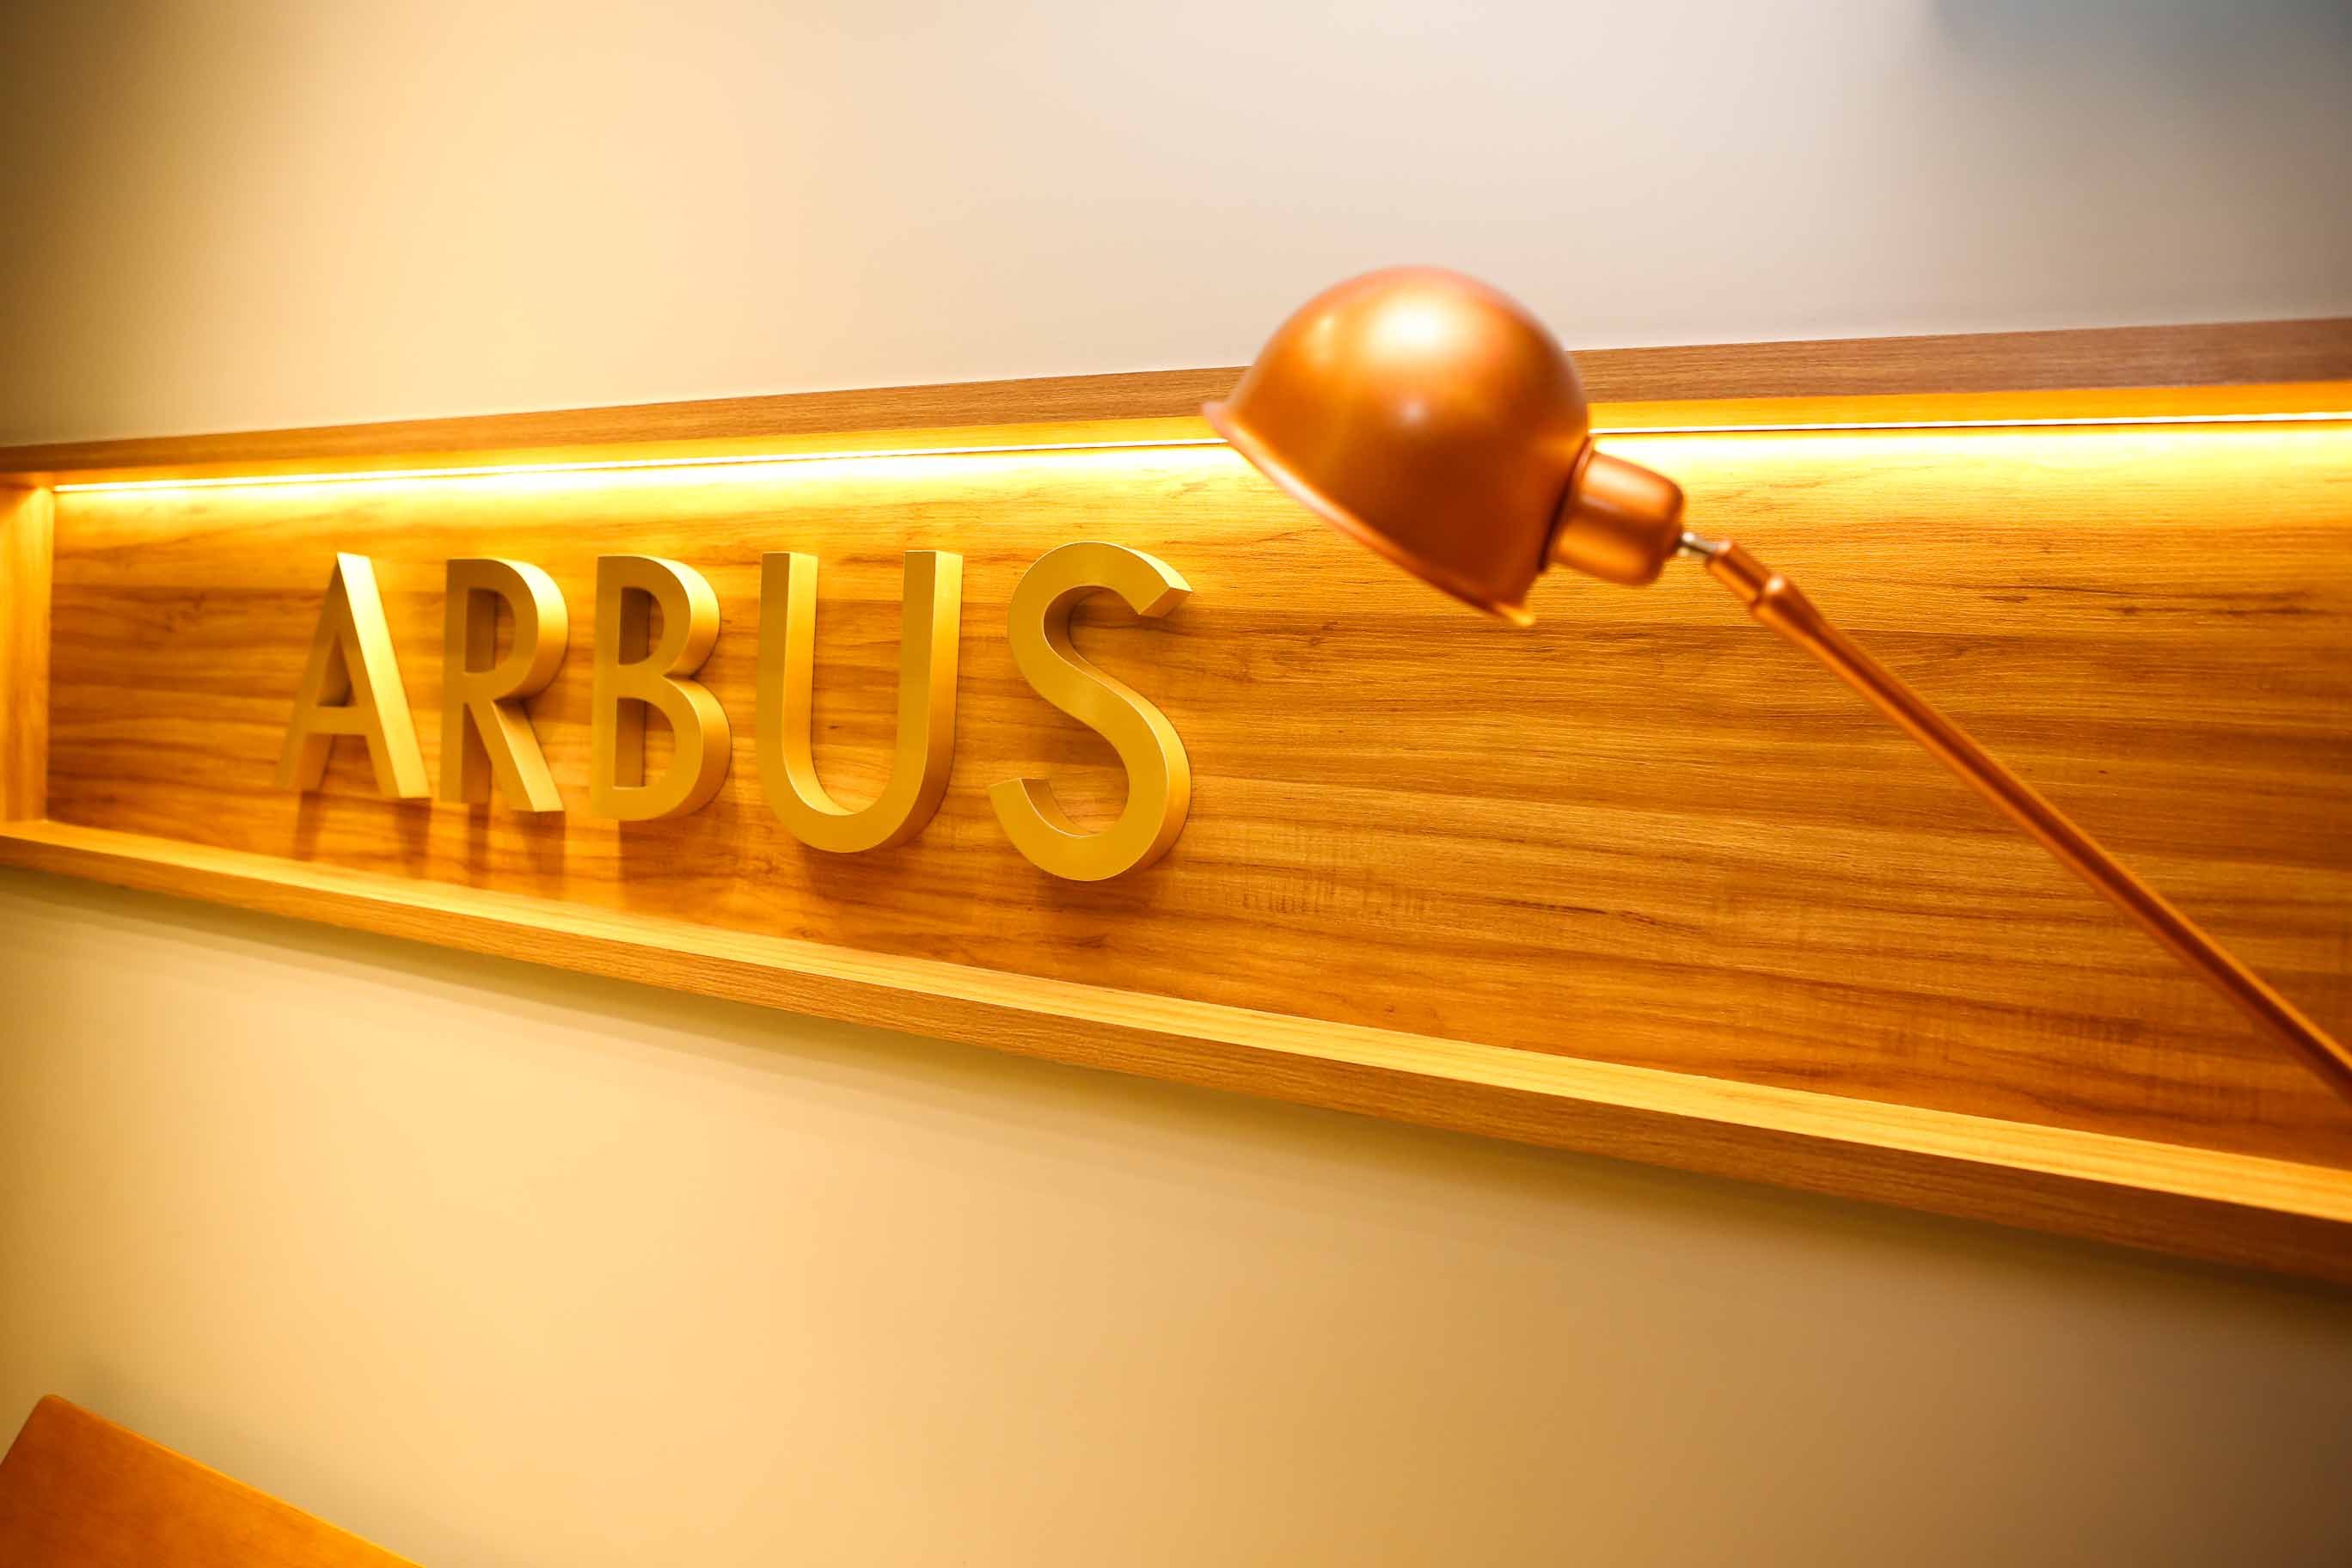    Arbus Soft Office                  